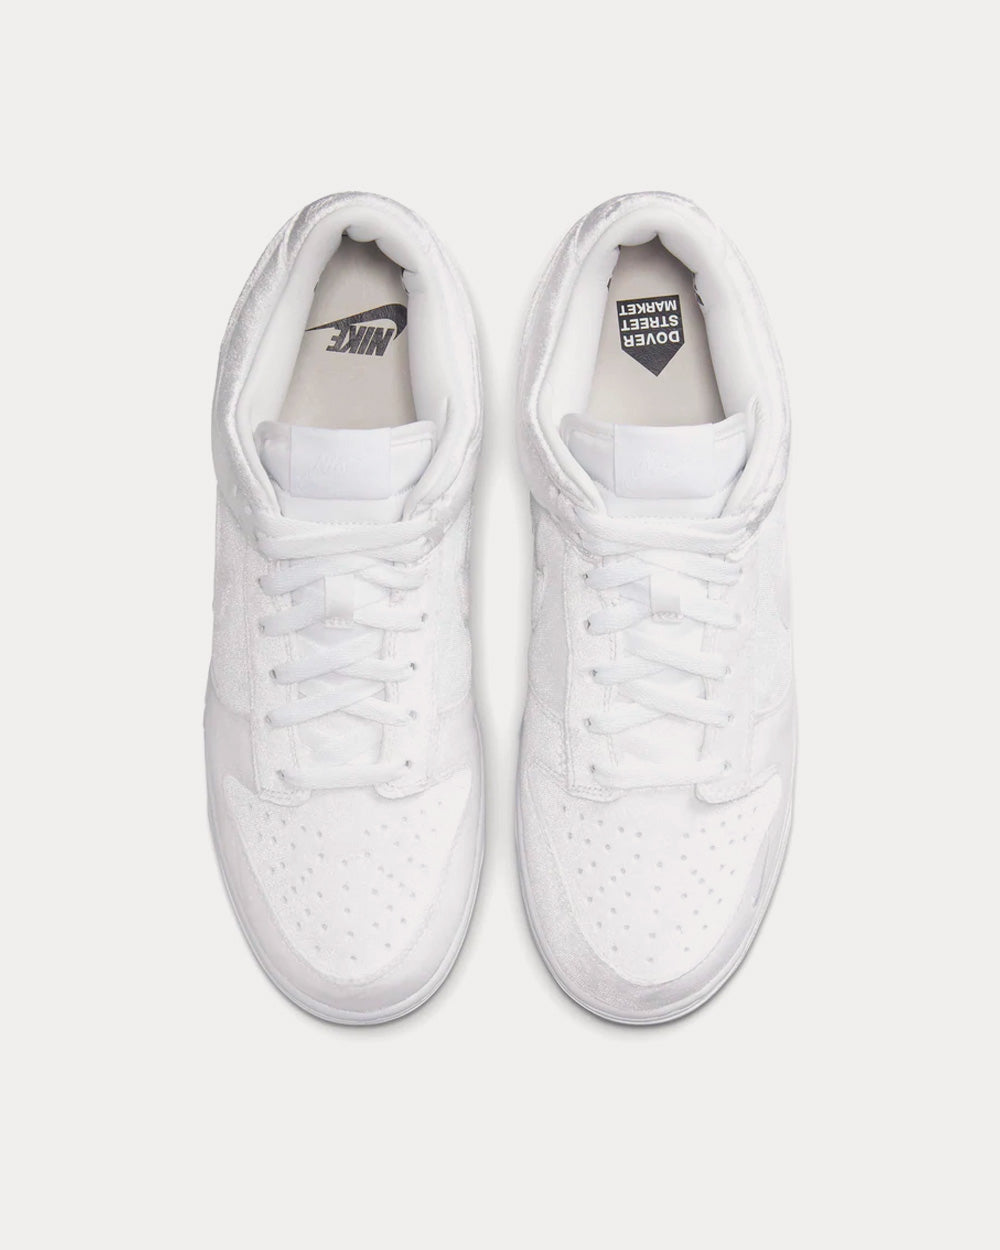 Nike x Comme des Garçons - Dunk Low Velvet White Low Top Sneakers